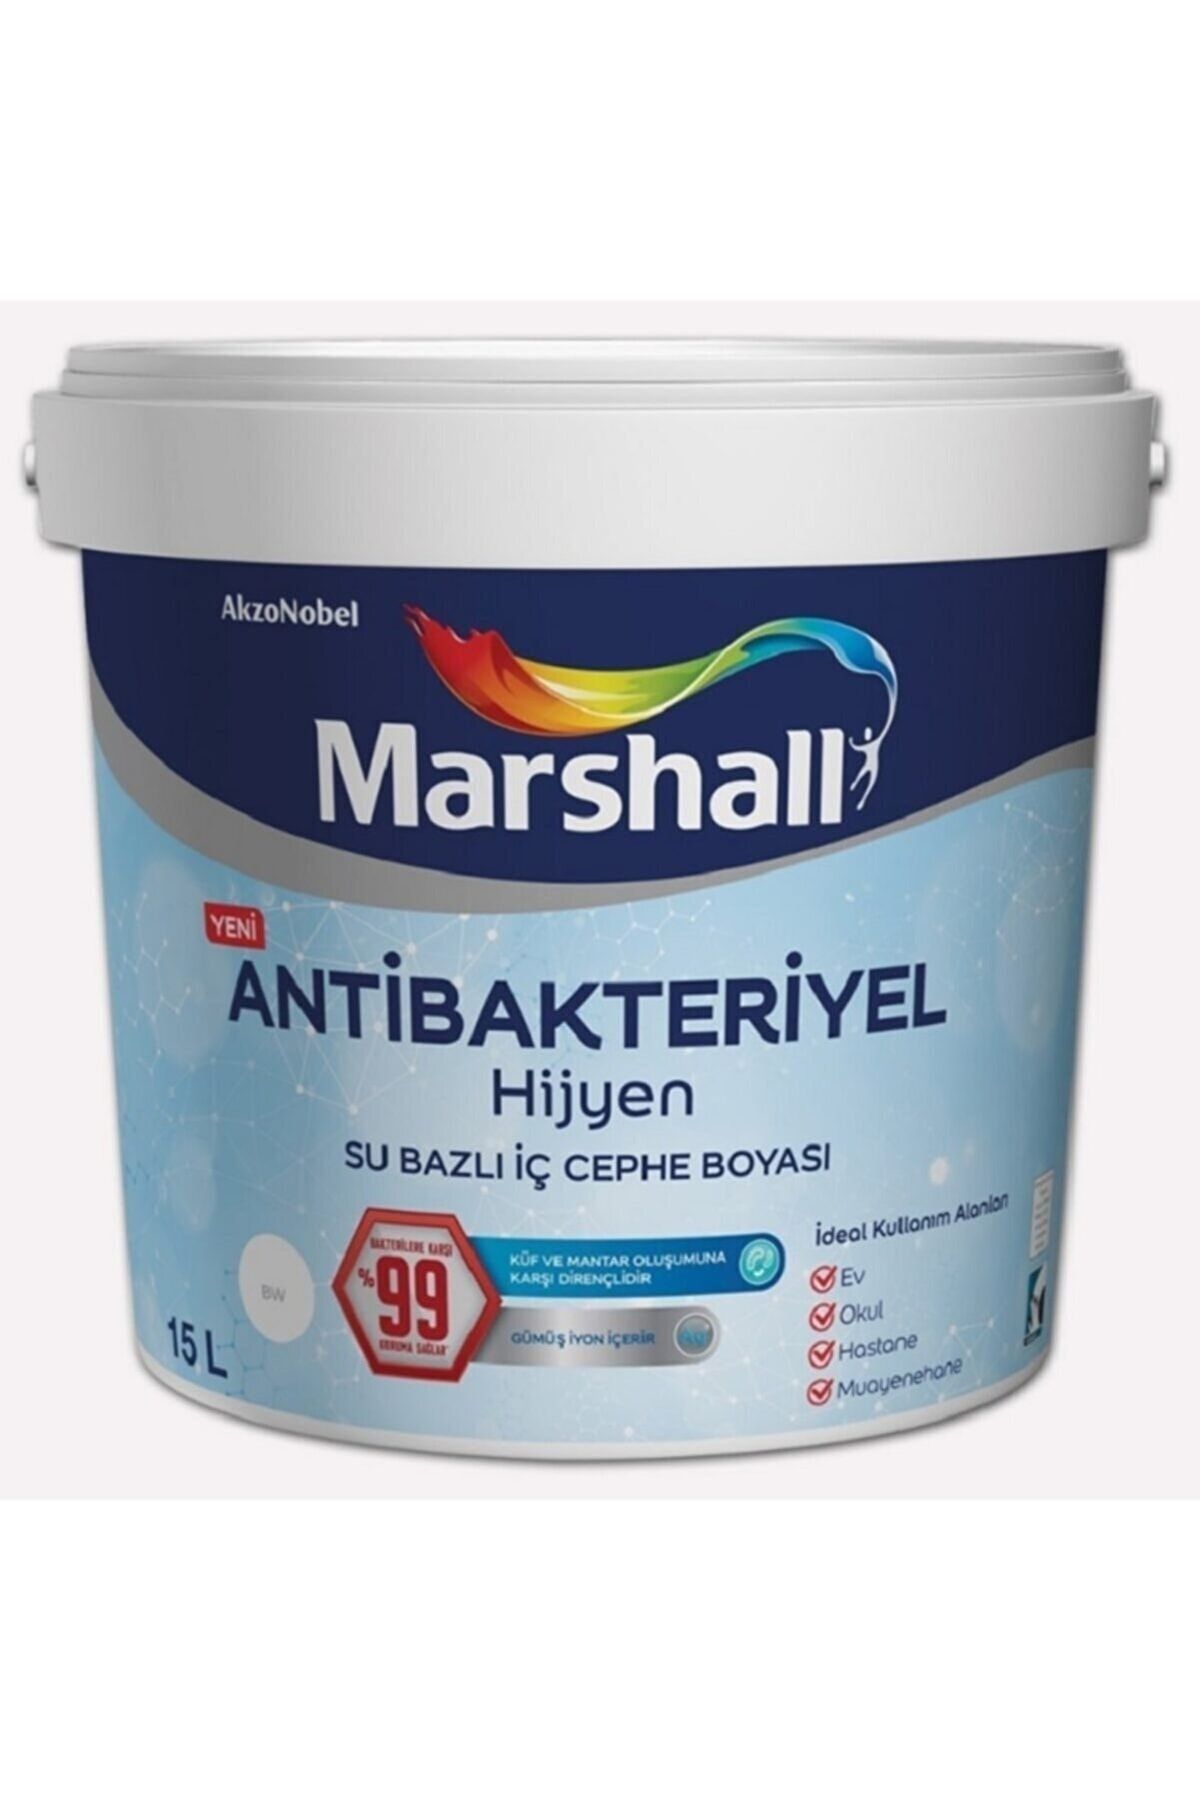 Marshall Antibakteriyel Hijyen Antiküf Iç Cephe Boyası 15 Lt [20 Kg]